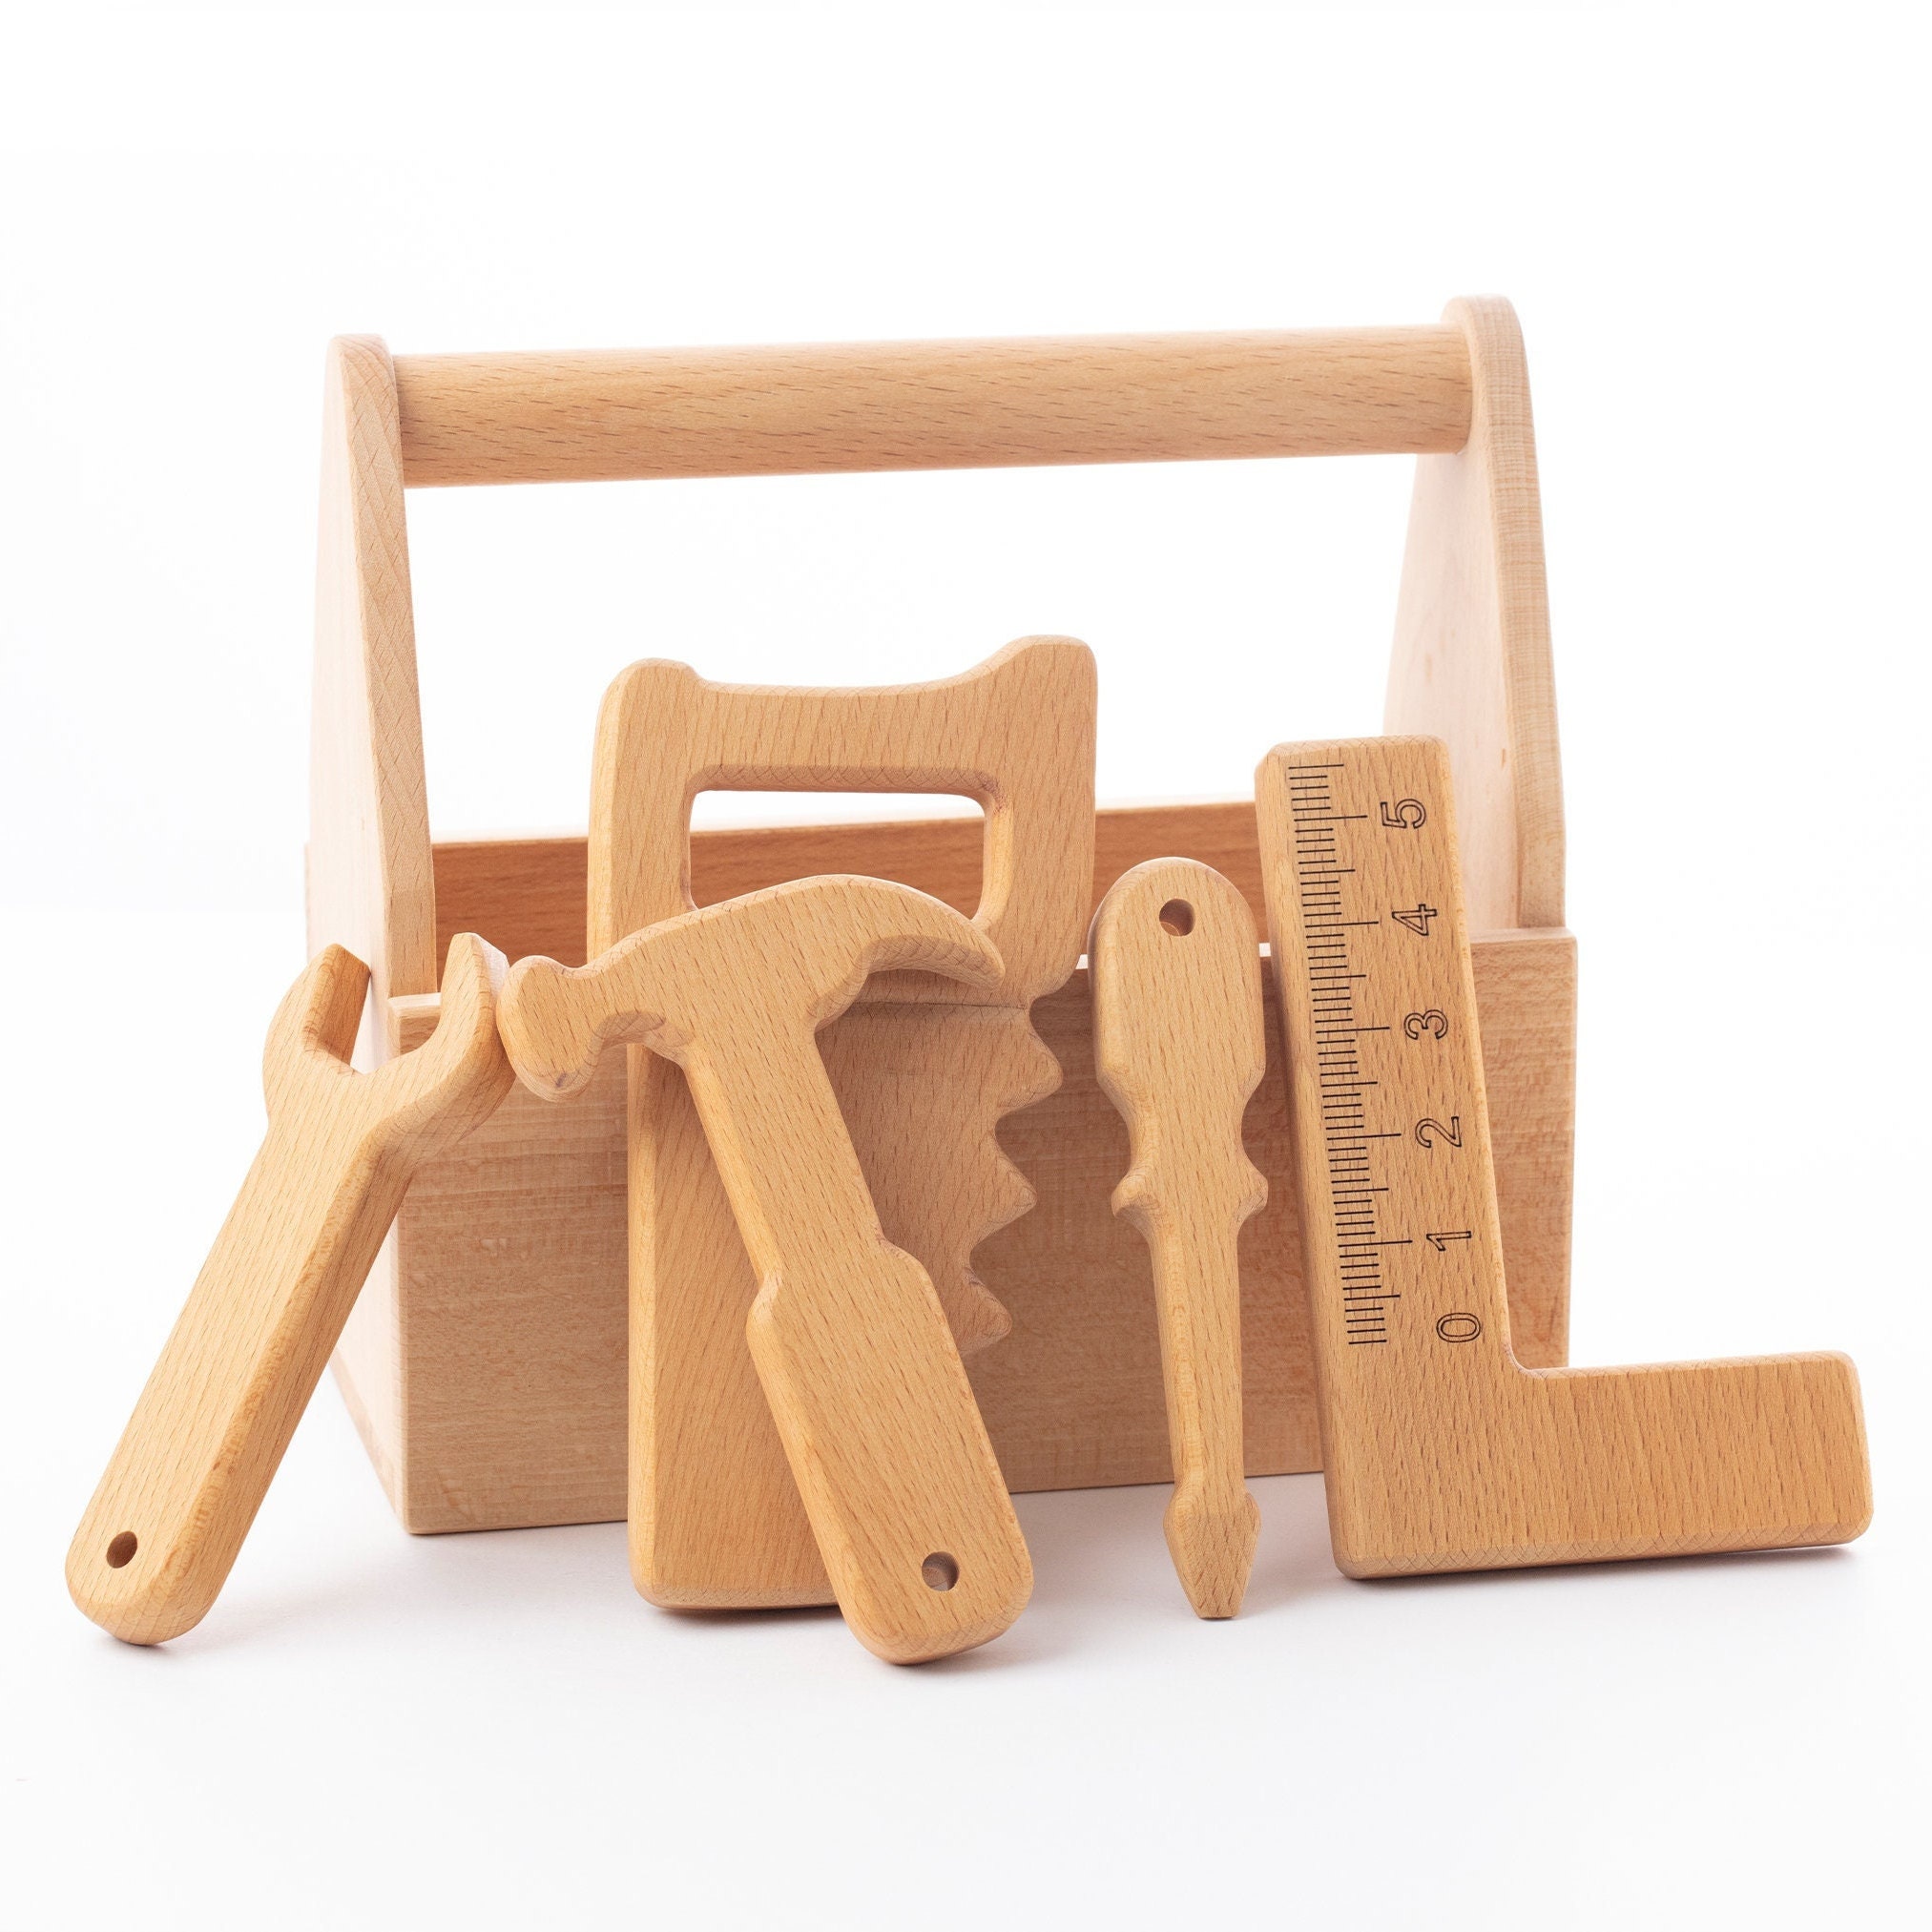 Juego de herramientas de madera Montessori juguetes para niños de 2, 3, 4,  5 años, 29 piezas, juguetes educativos para niños de 2 a 3 años, banco de